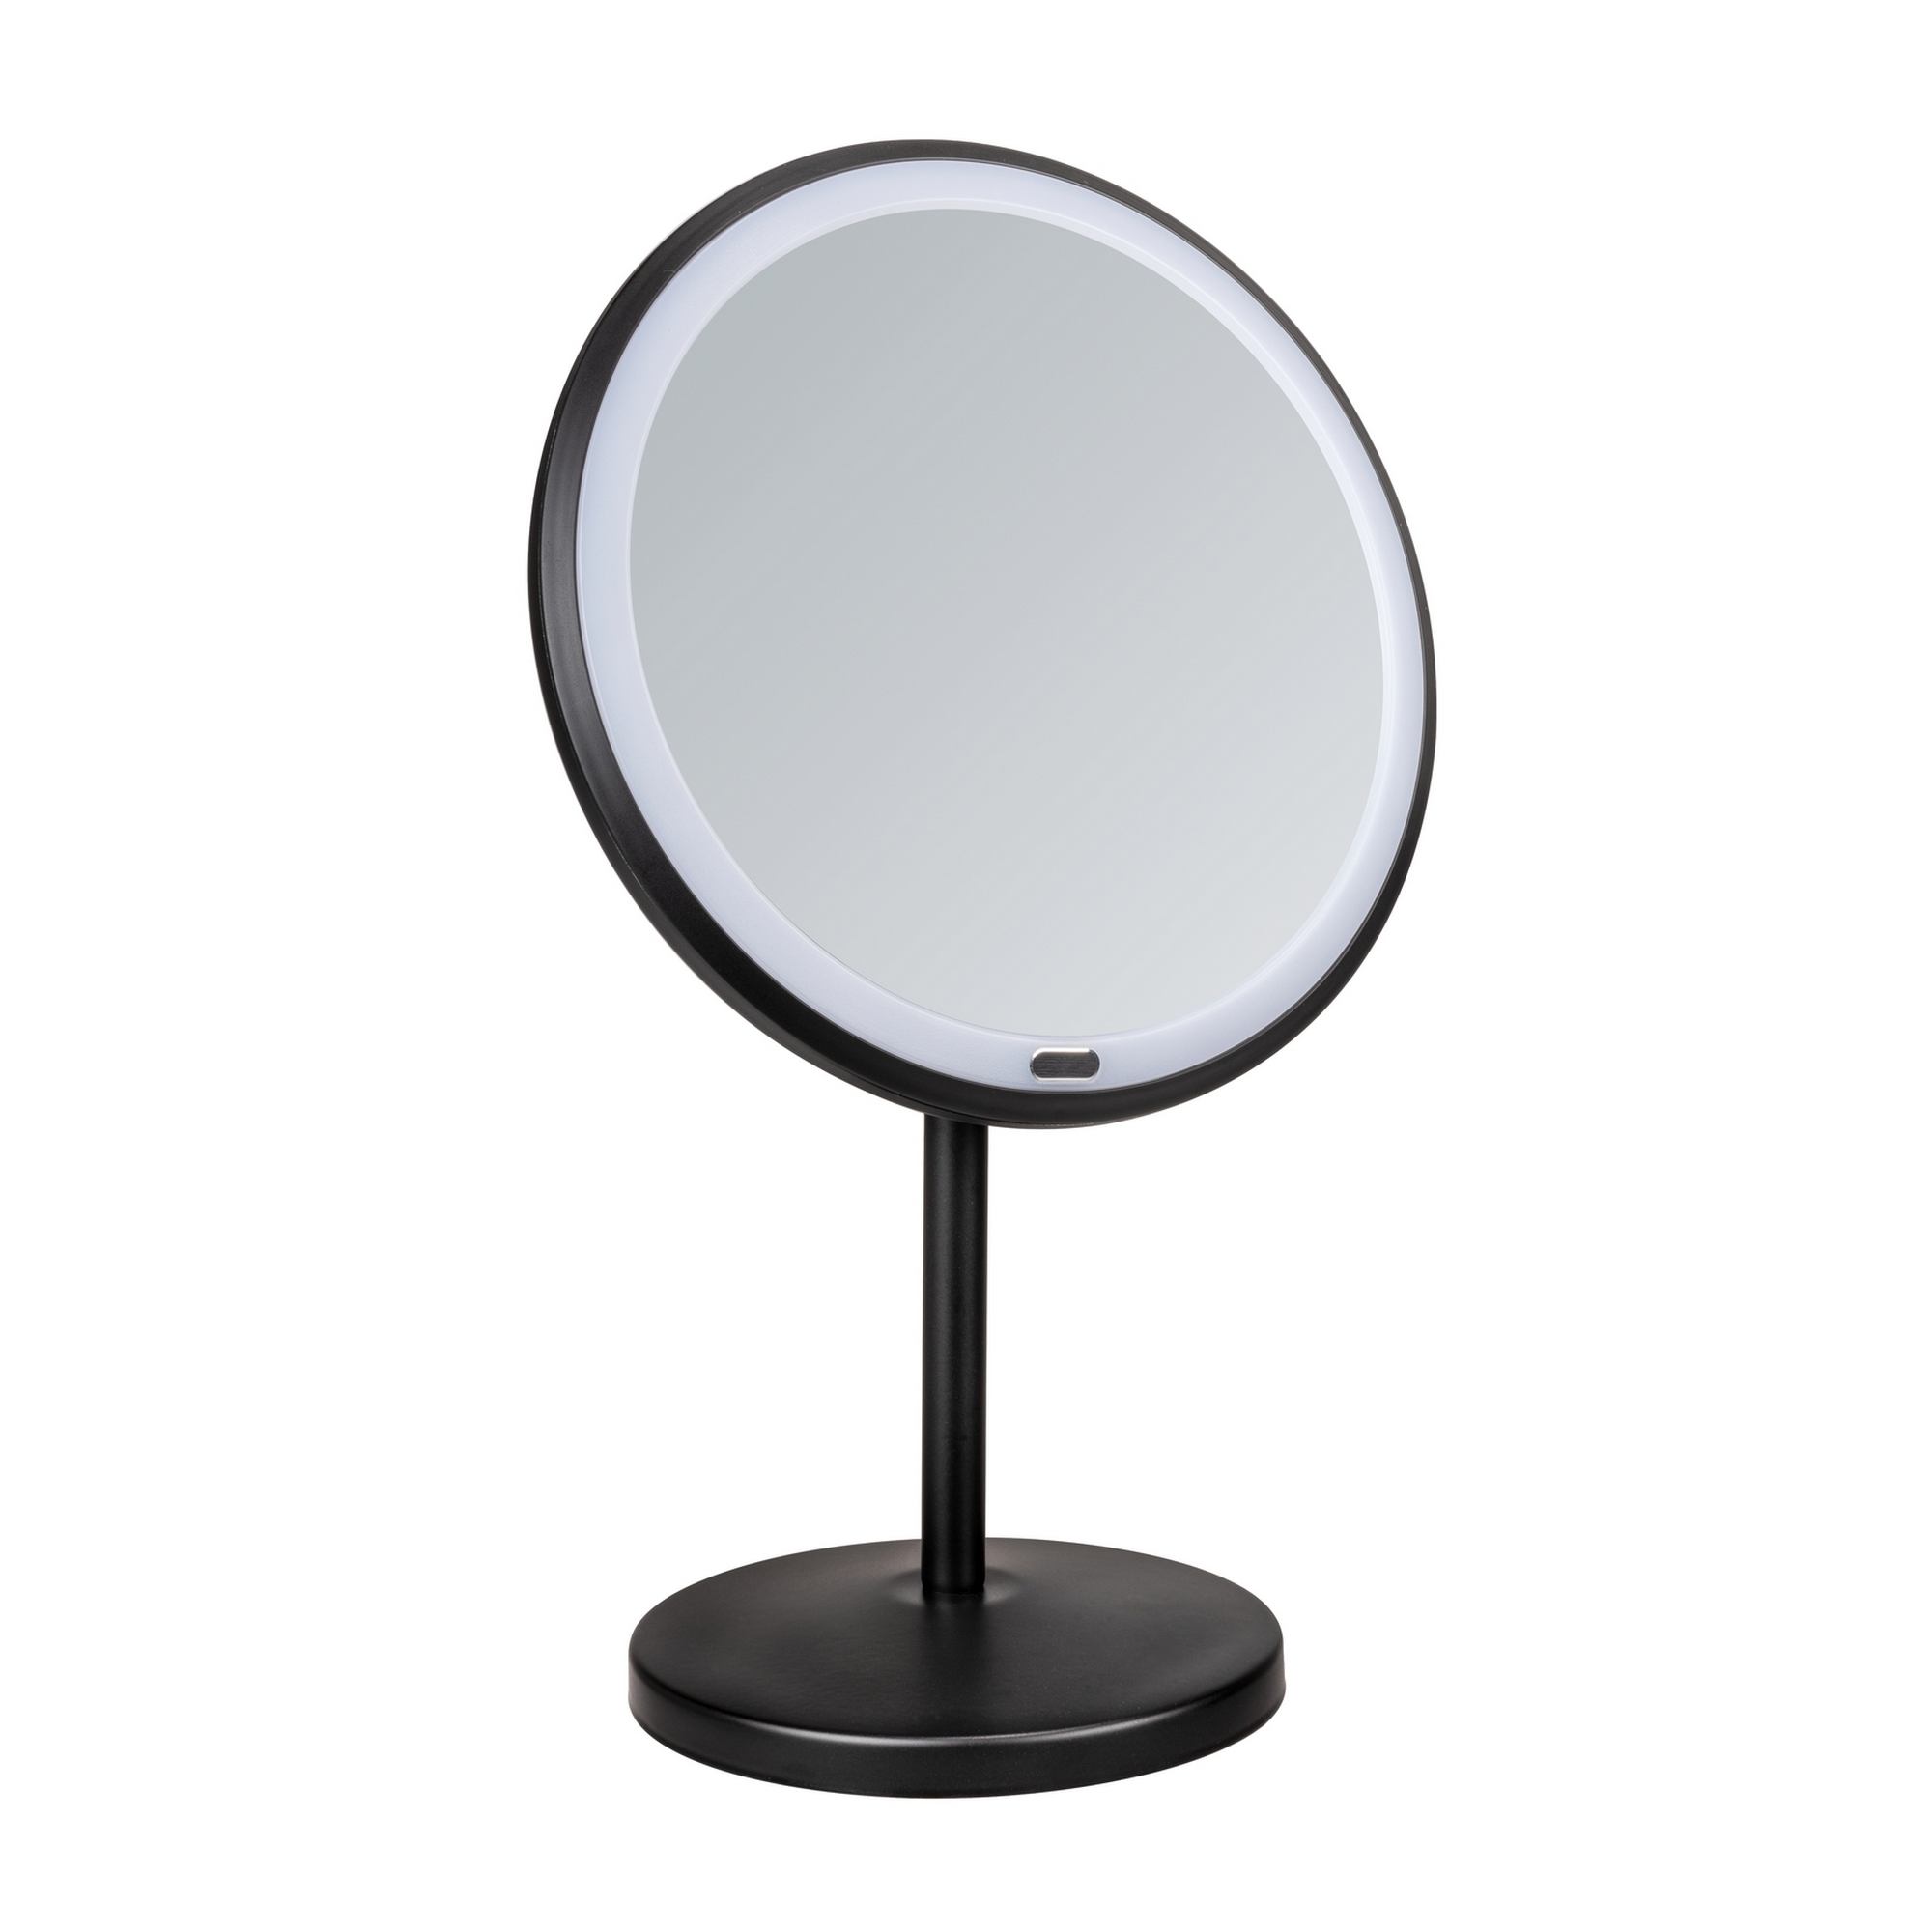 Standspiegel 'Onno' mit LED, schwarz matt Ø 20 cm, mit 5-fach Vergrößerung + product picture